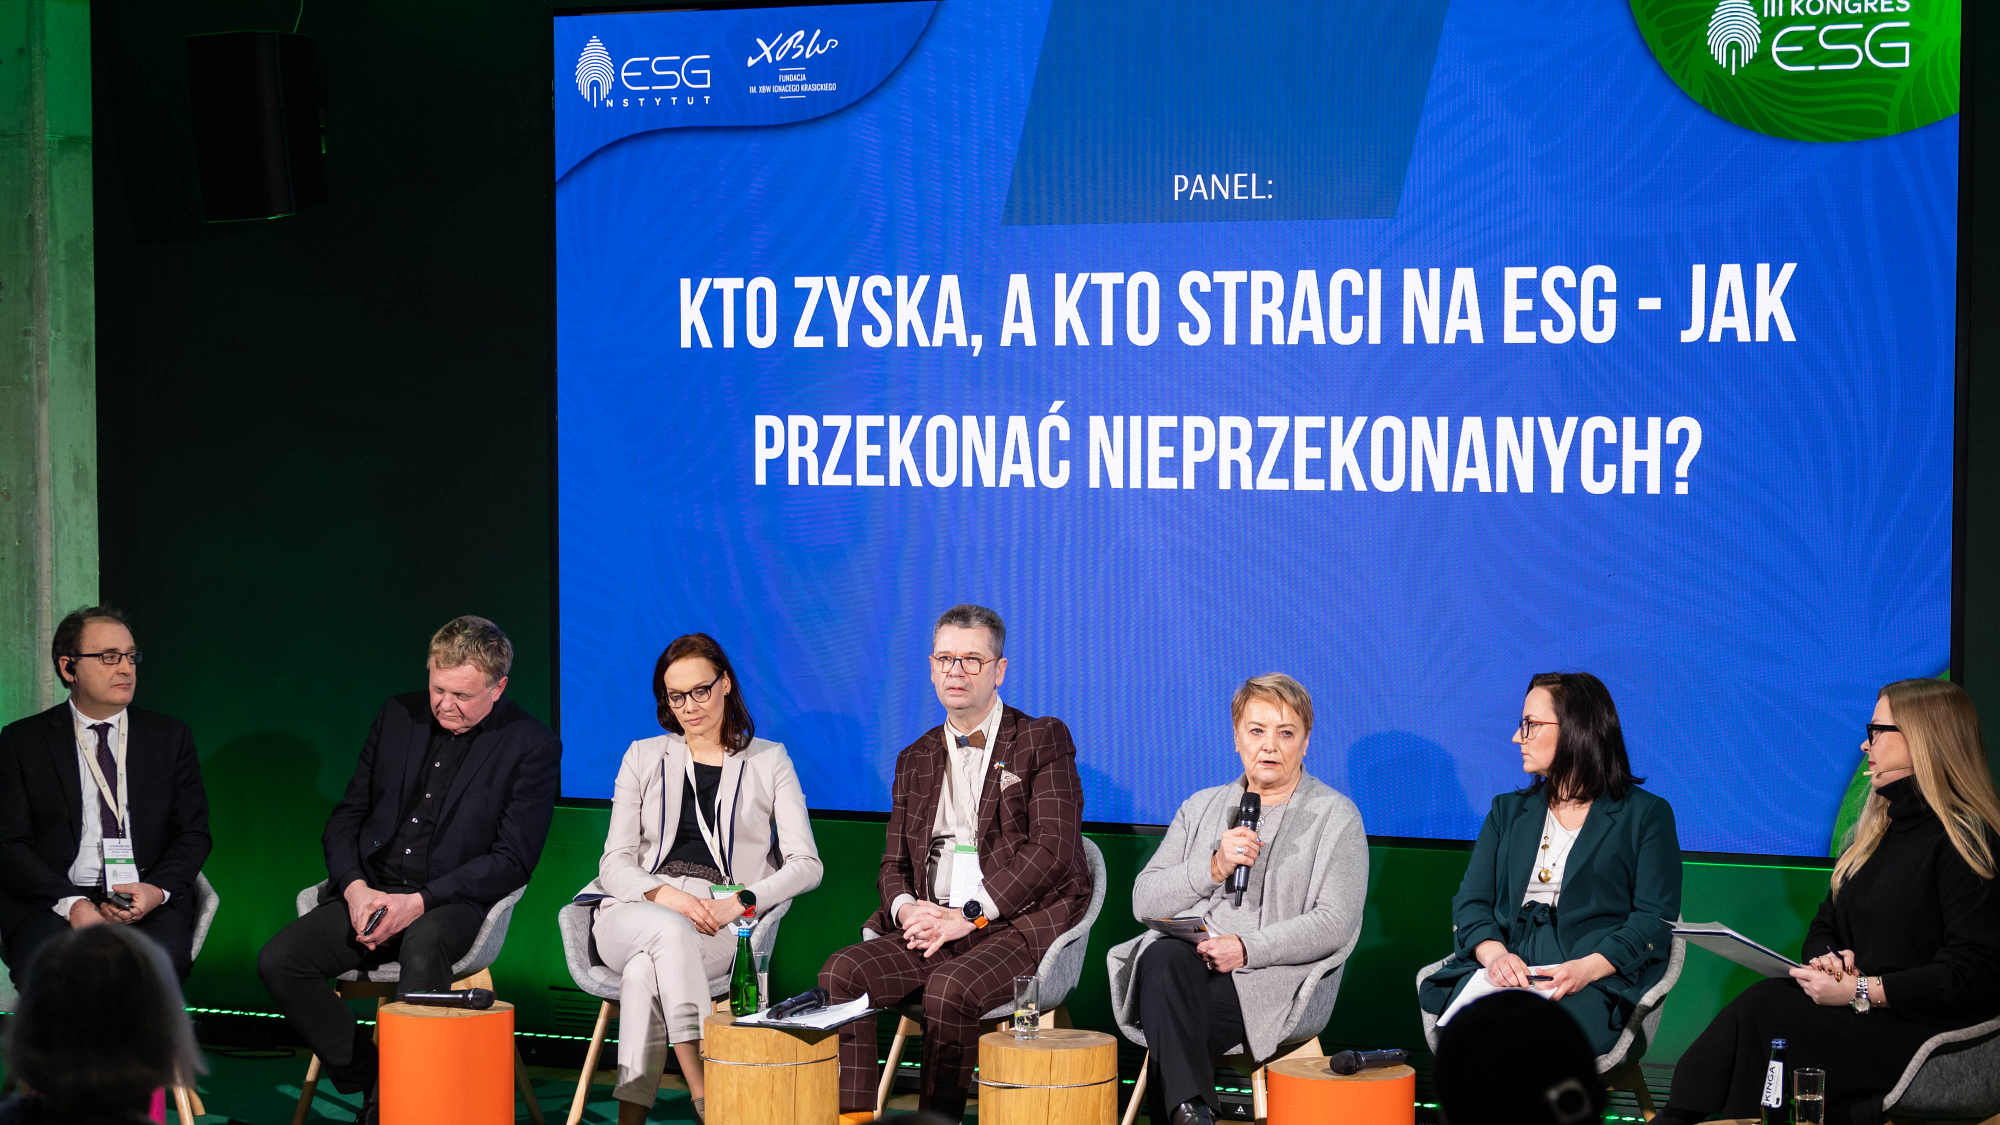 Wdrażanie ESG - debata III Kongres ESG w Warszawie